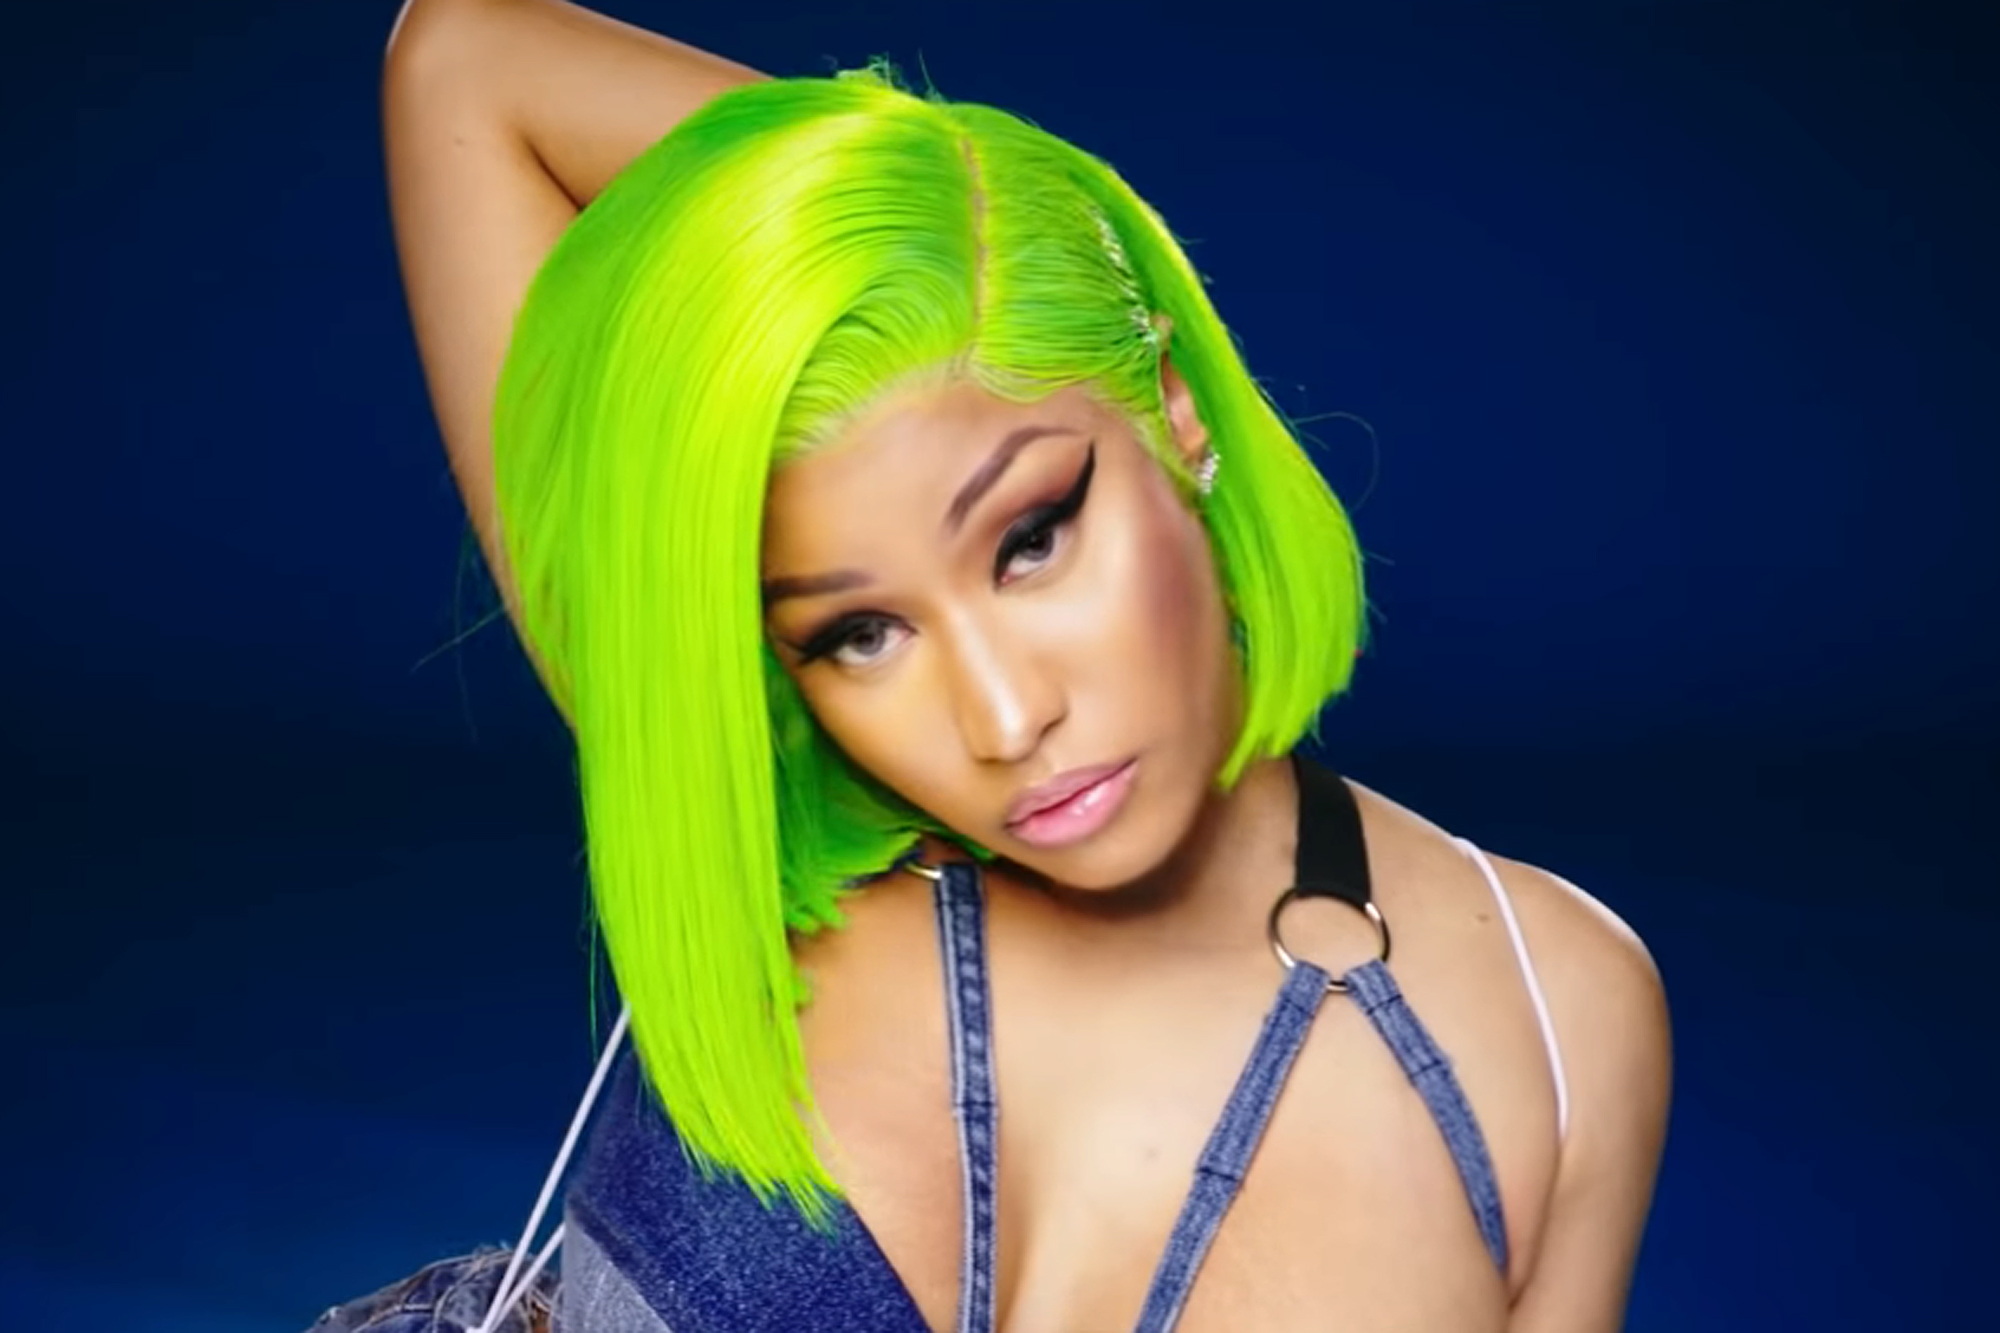 8. The Story Behind Nicki Minaj's Blonde Hair - wide 5